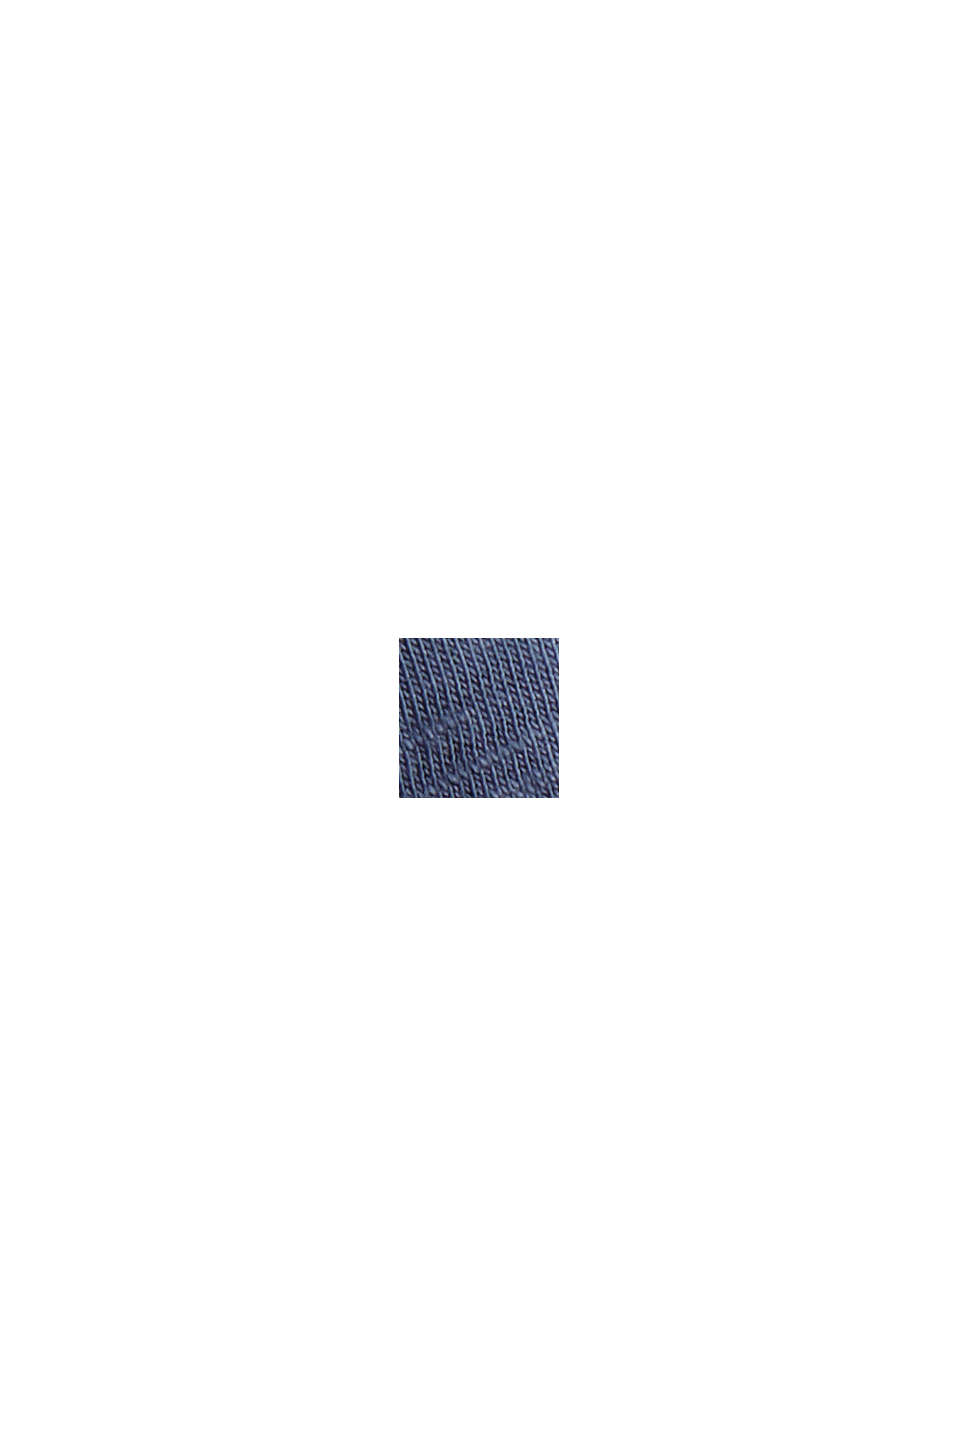 Koszulka henley z długim rękawem ze 100% bawełny organicznej, GREY BLUE, swatch